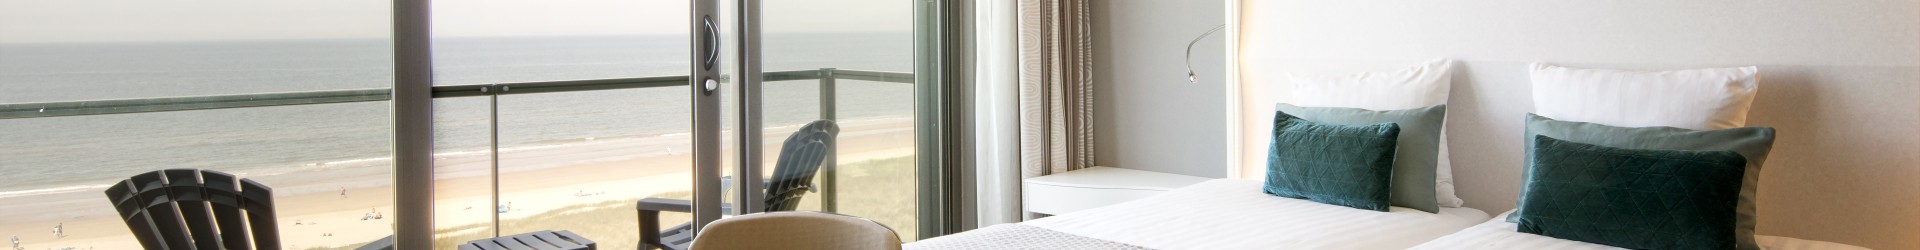 Golfzang-hotelkamer-zeezicht(1).jpg